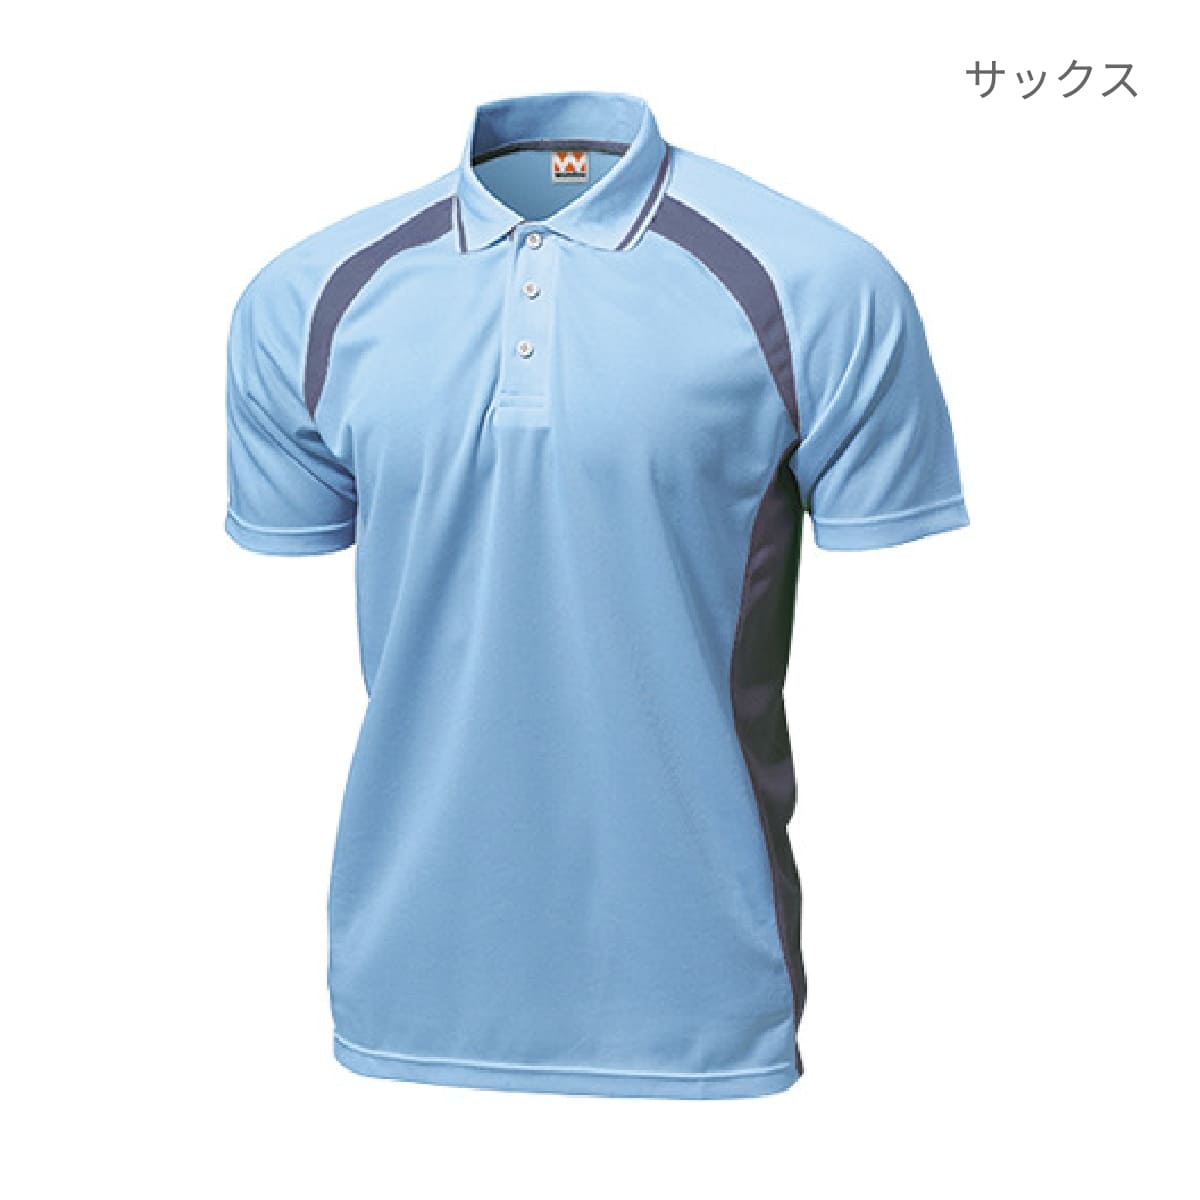 【送料無料】ベーシックテニスシャツ | ユニフォーム | 1枚 | P1710 | ライトグリーン